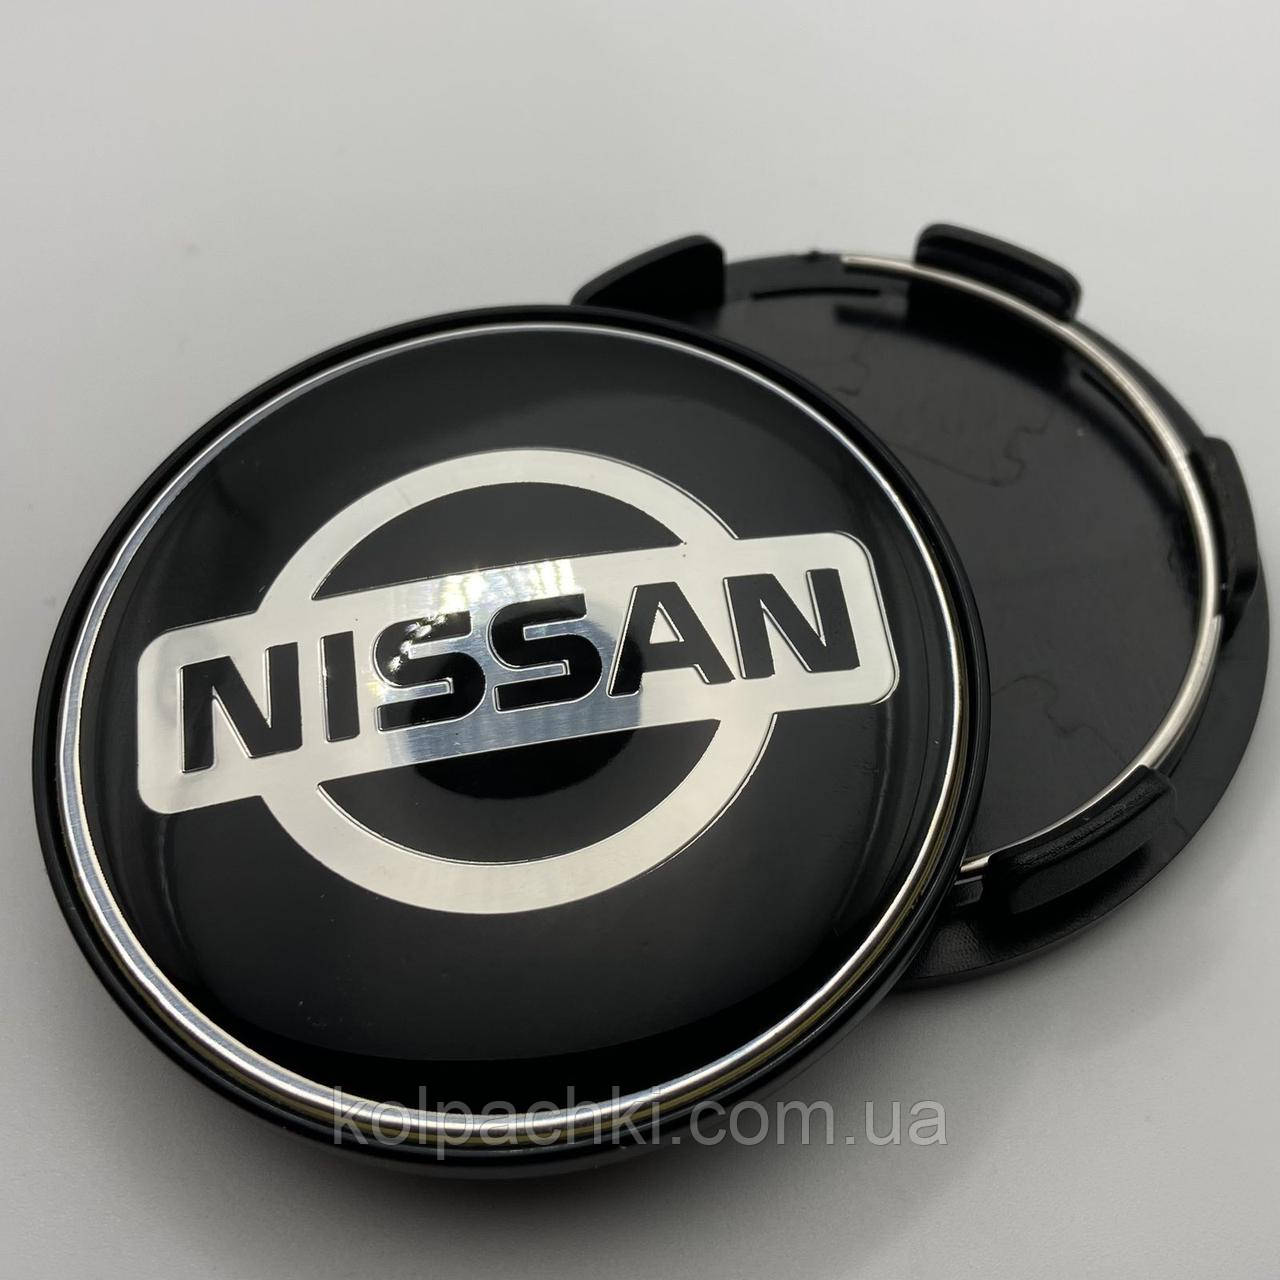 Ковпачок на диски Nissan 64 мм 60 мм хром